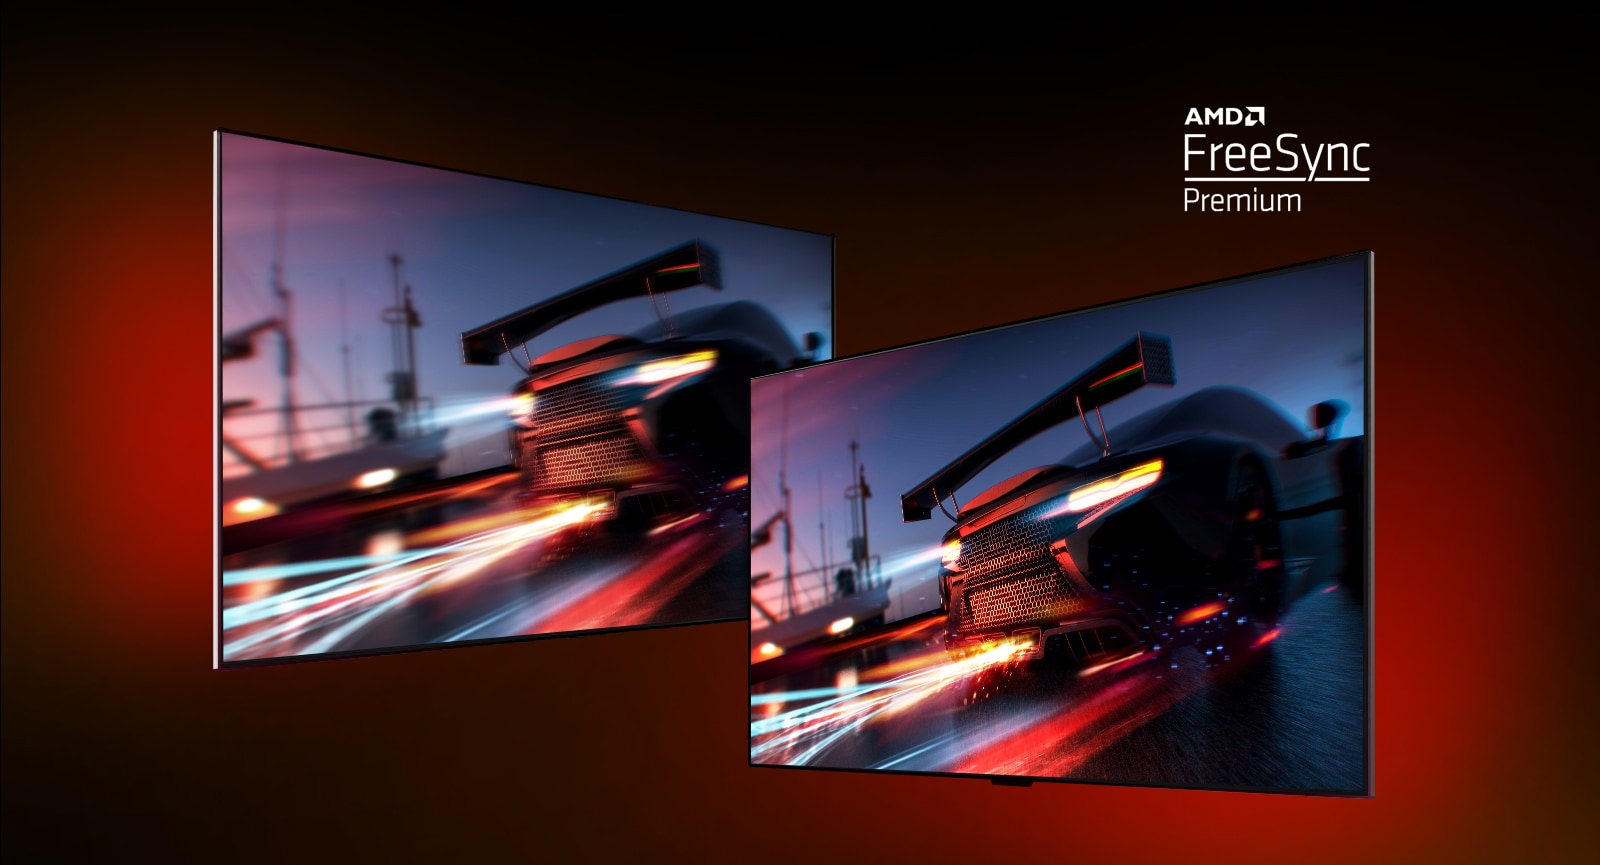 Ada dua TV – di sebelah kiri menampilkan adegan permainan FORTNITE dengan mobil balap. Di sebelah kanan juga menunjukkan adegan permainan yang sama tetapi dalam tampilan gambar yang lebih cerah dan lebih jelas. Di sudut kanan atas menunjukkan logo premium AMD FreeSync.